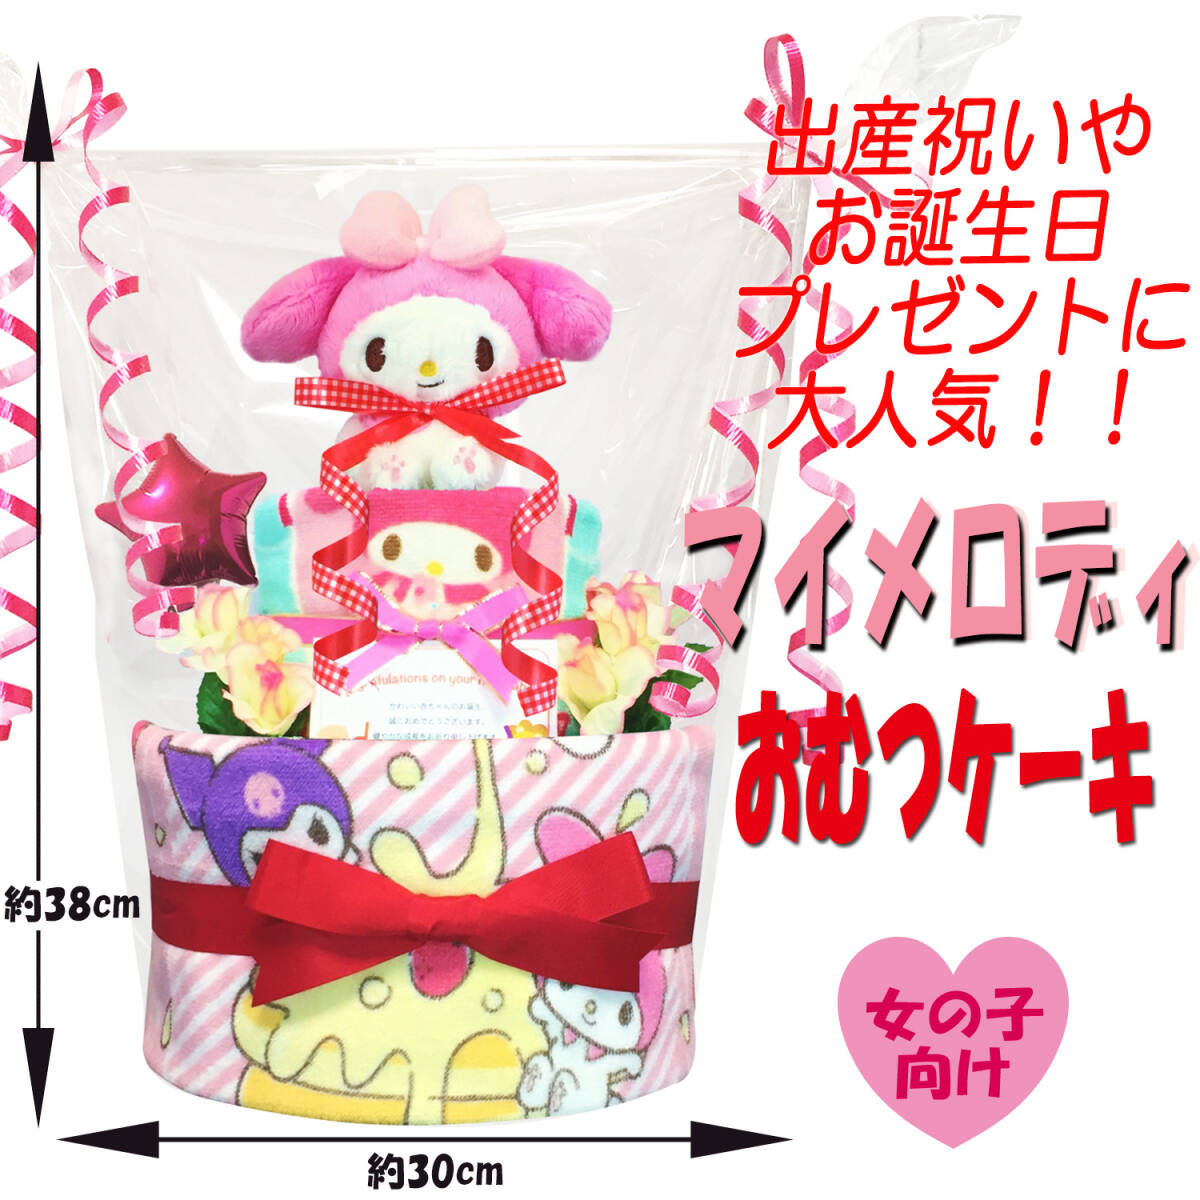  очень популярный Sanrio My Melody. ba Rune имеется подгузники кекс! празднование рождения . baby душ,100 день праздника ., половина день рождения . рекомендация!